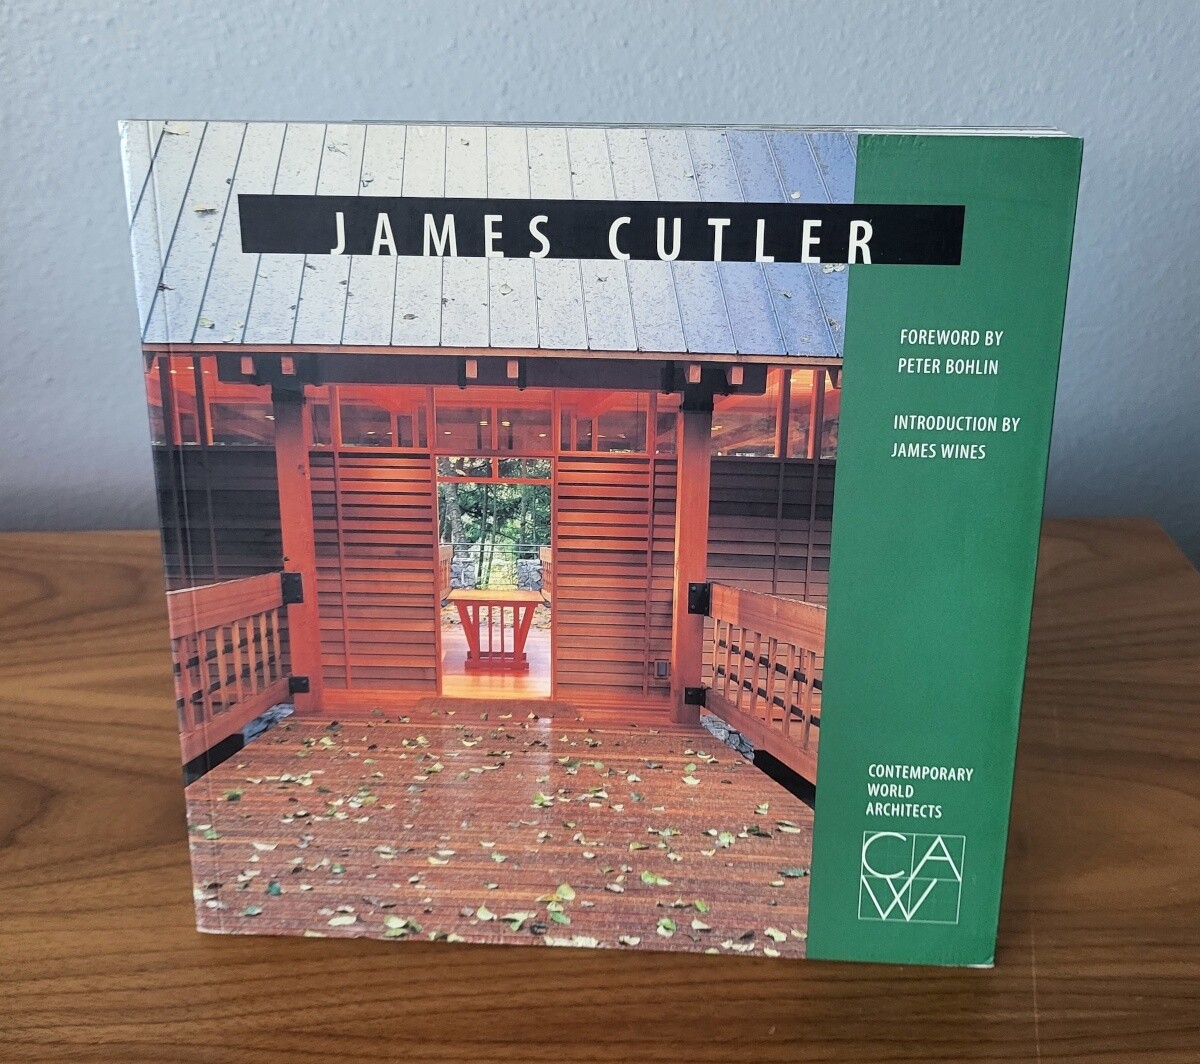 James Cutler